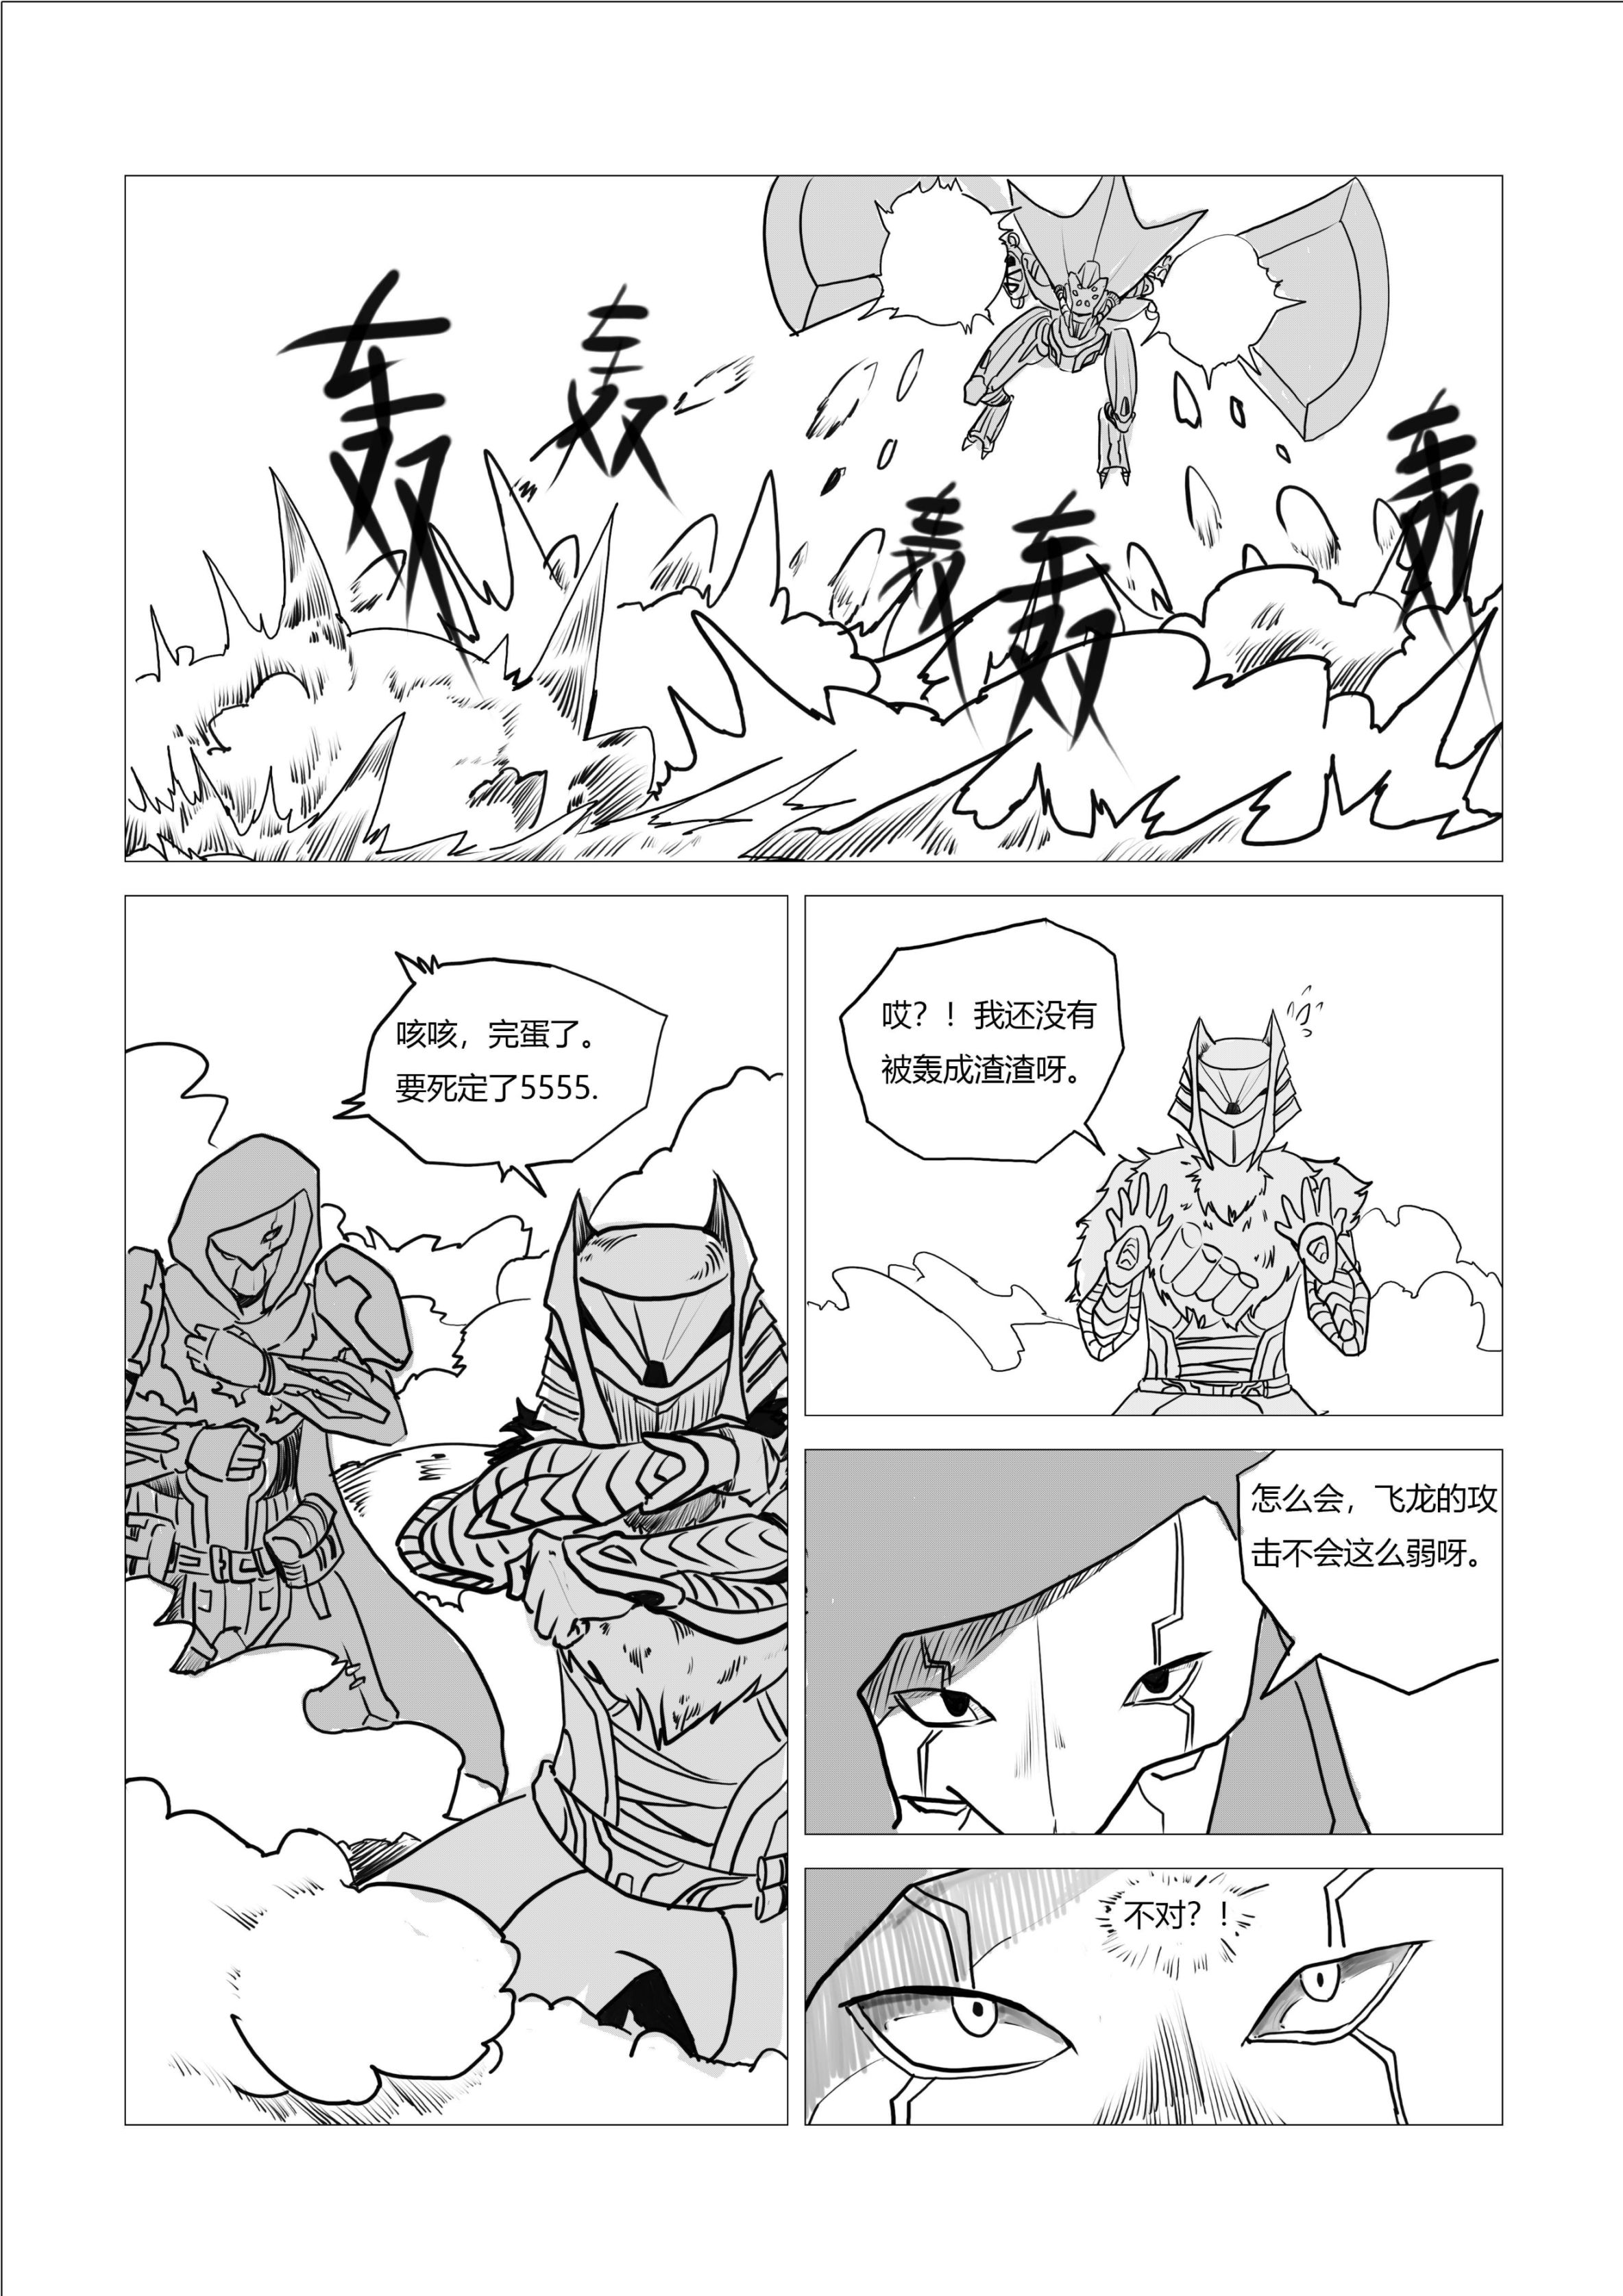 命运2原创战斗漫画（不止于战斗）28页-第21张